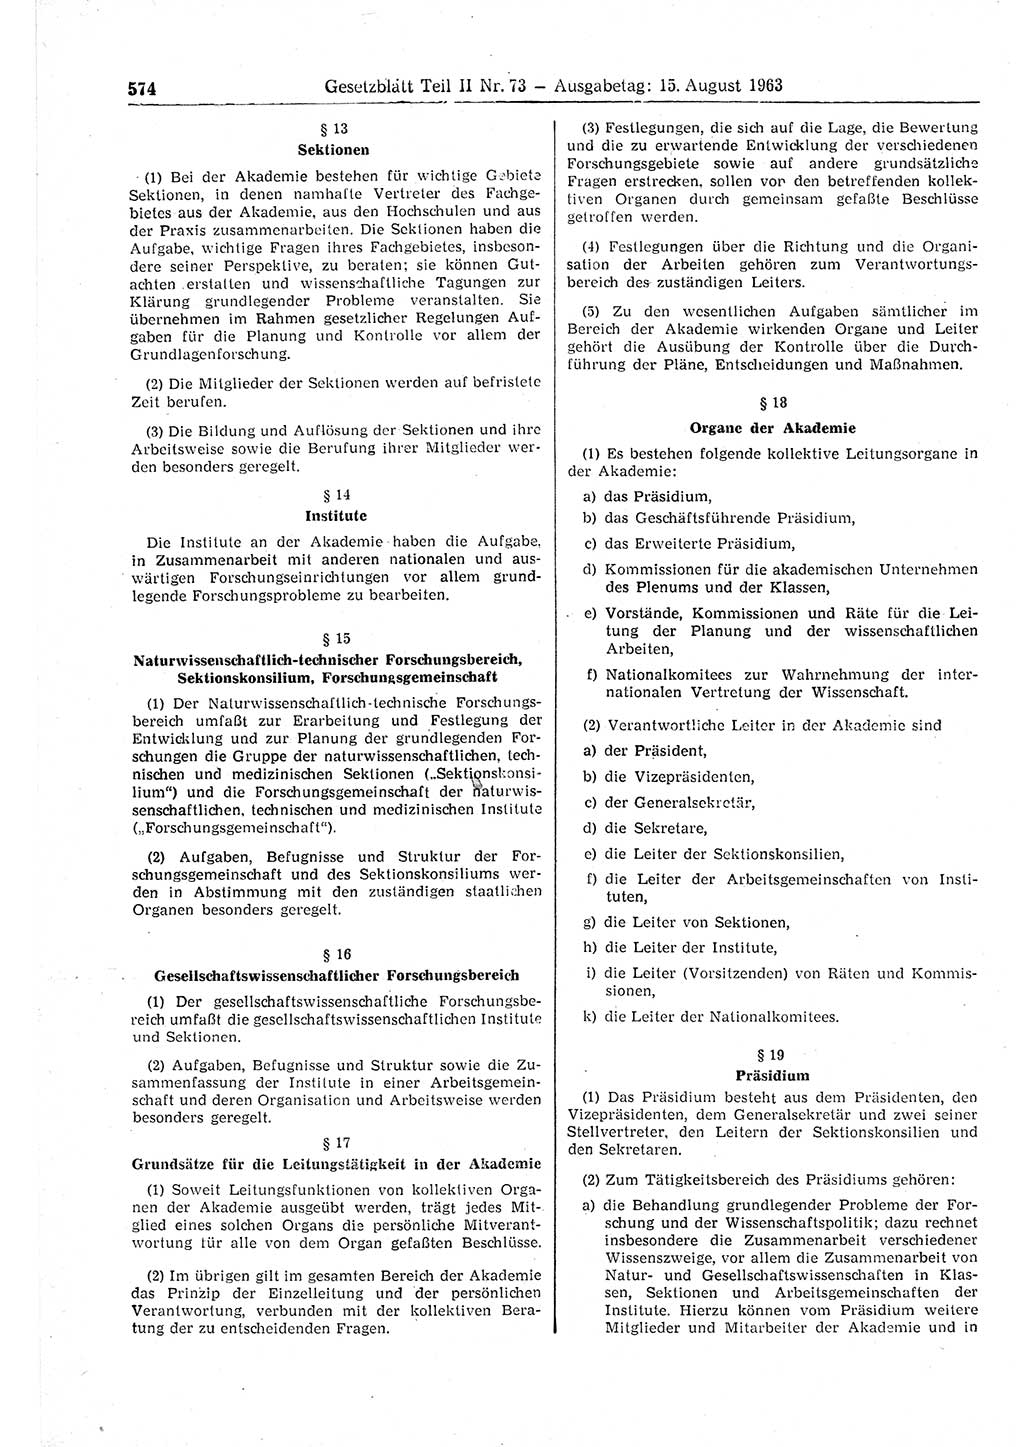 Gesetzblatt (GBl.) der Deutschen Demokratischen Republik (DDR) Teil ⅠⅠ 1963, Seite 574 (GBl. DDR ⅠⅠ 1963, S. 574)